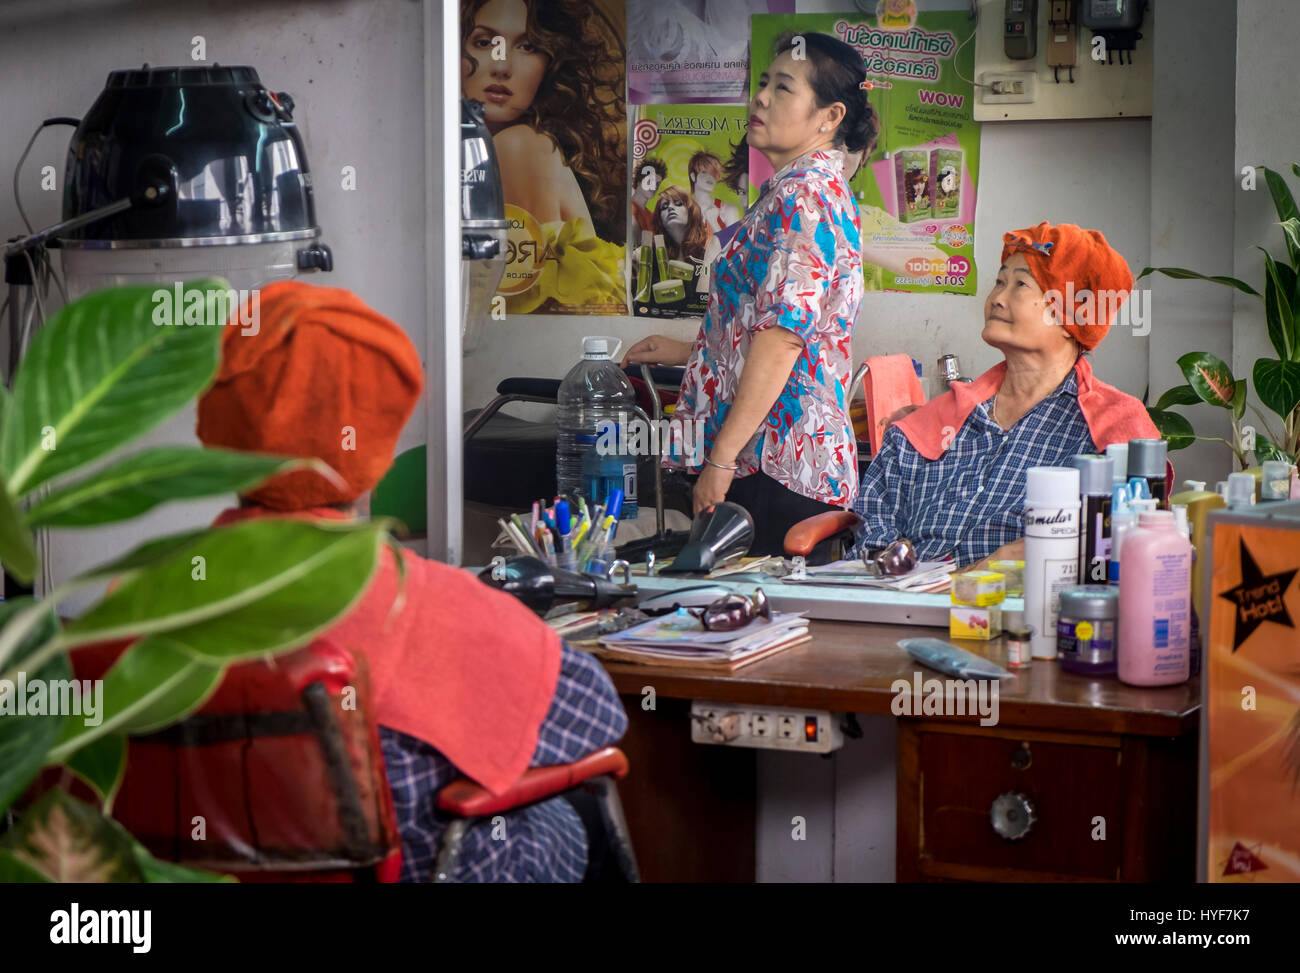 MAE KLONG - TAHILAND - CIRCA SEPTEMBRE 2014 : femmes thaïlandaises dans un salon de coiffure autour du marché ferroviaire Maeklong Banque D'Images